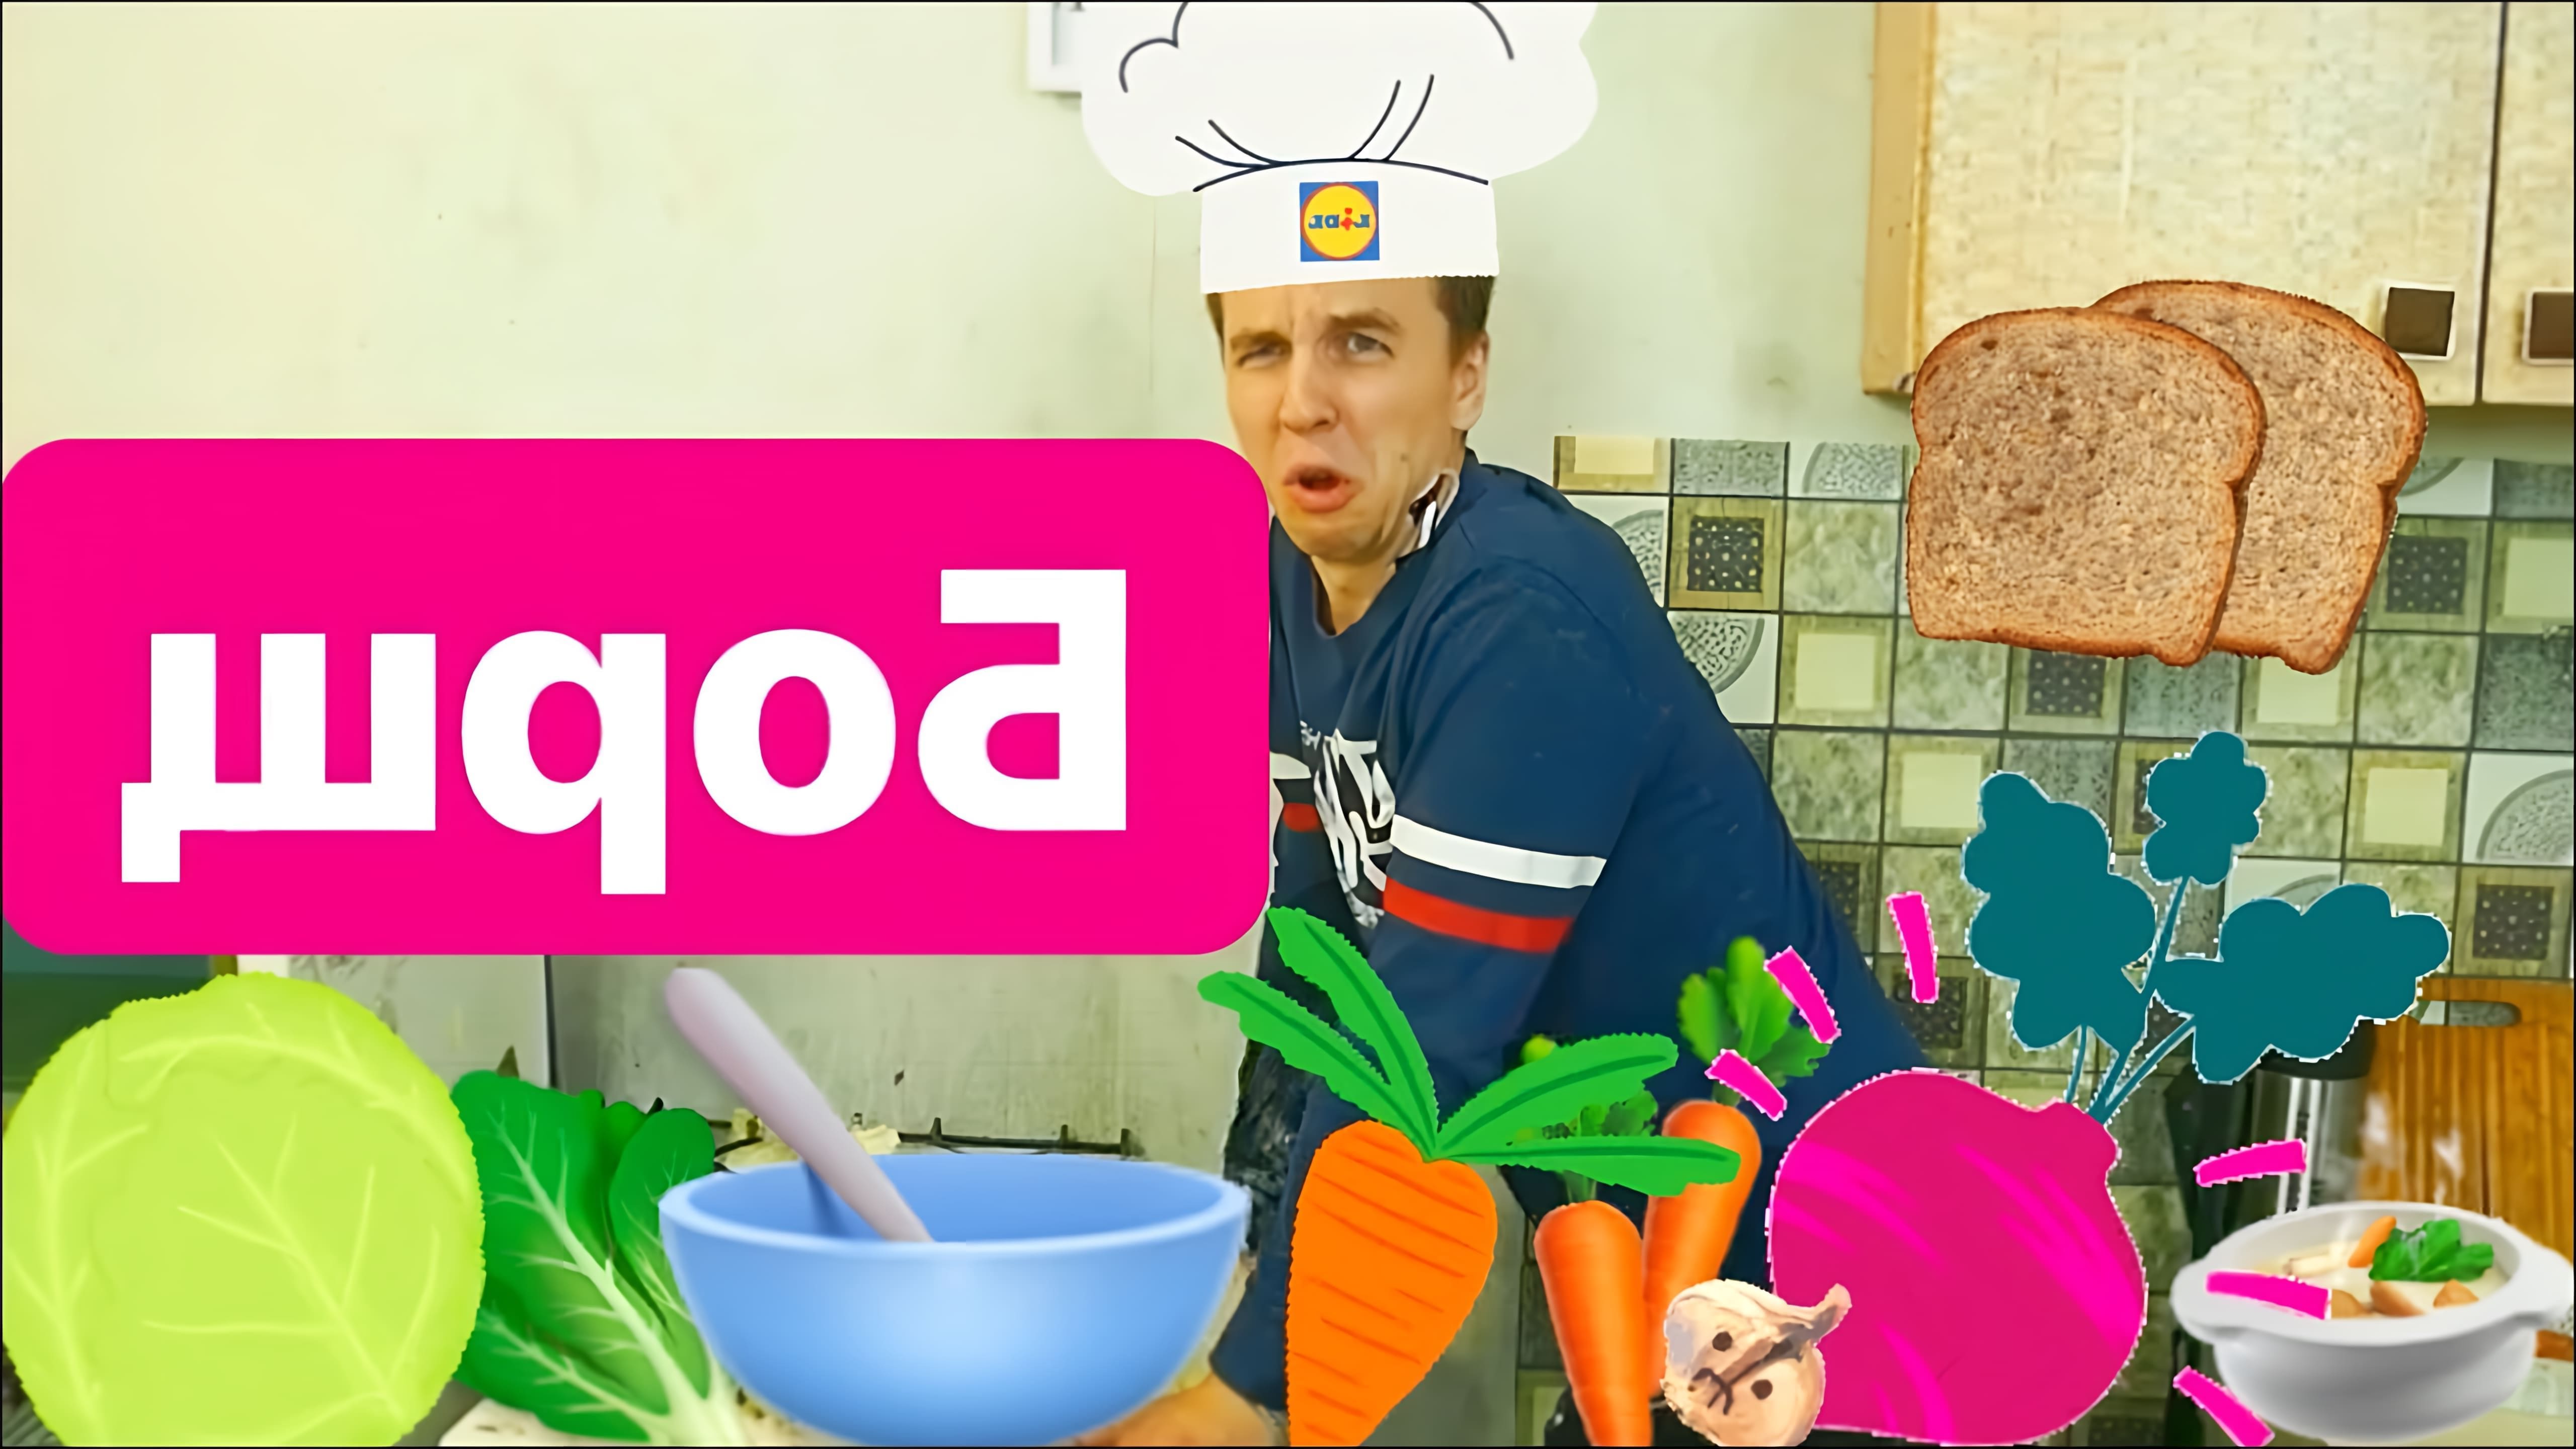 "Как приготовить борщ: рецепт борща от Пеги" - это видео-ролик, который показывает процесс приготовления вкусного и ароматного борща